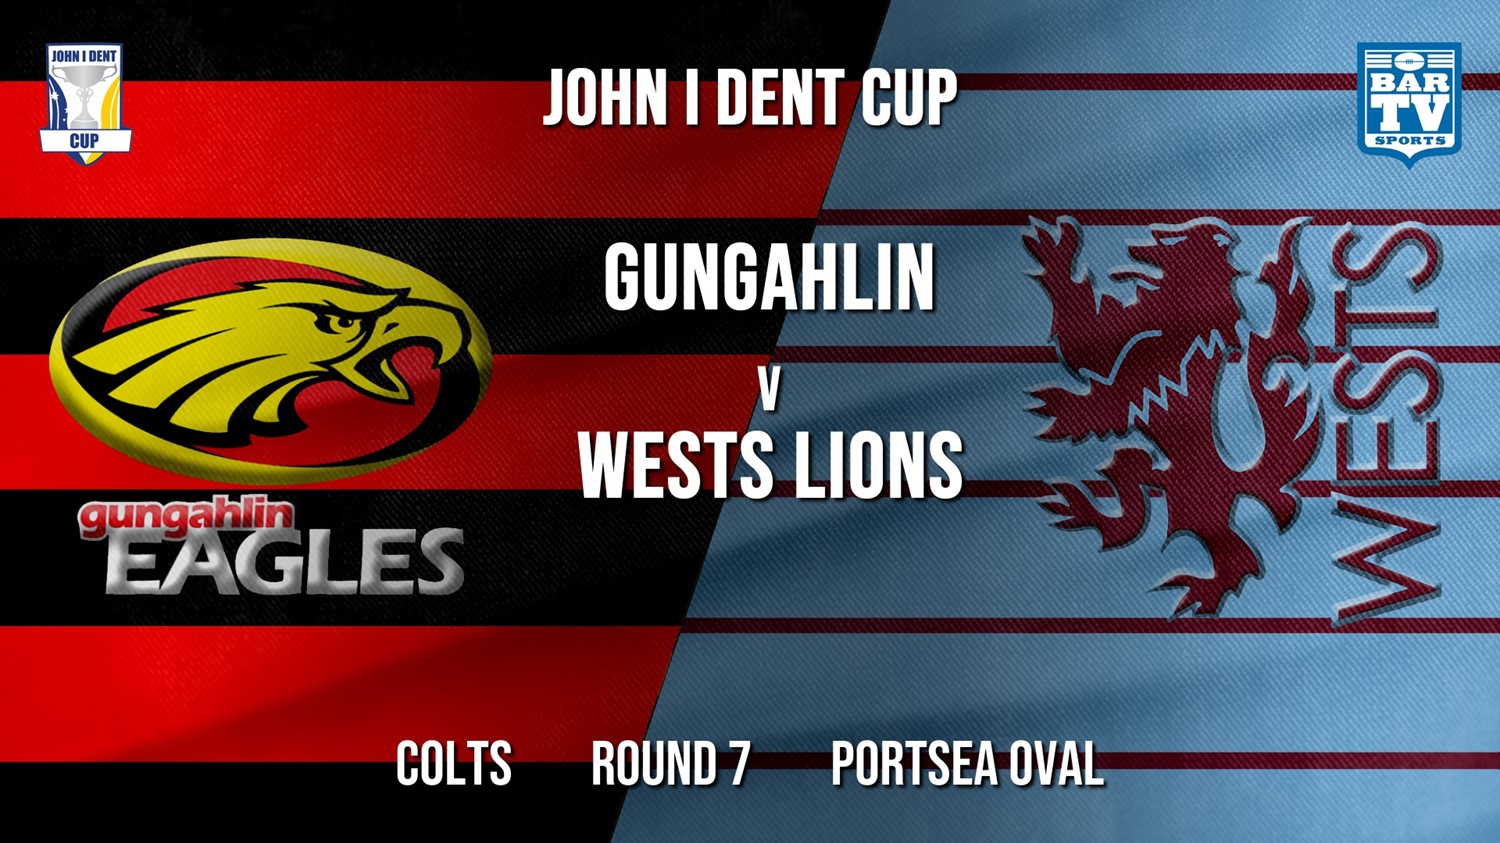 John I Dent Round 7 - Colts - Gungahlin Eagles v Wests Lions Minigame Slate Image